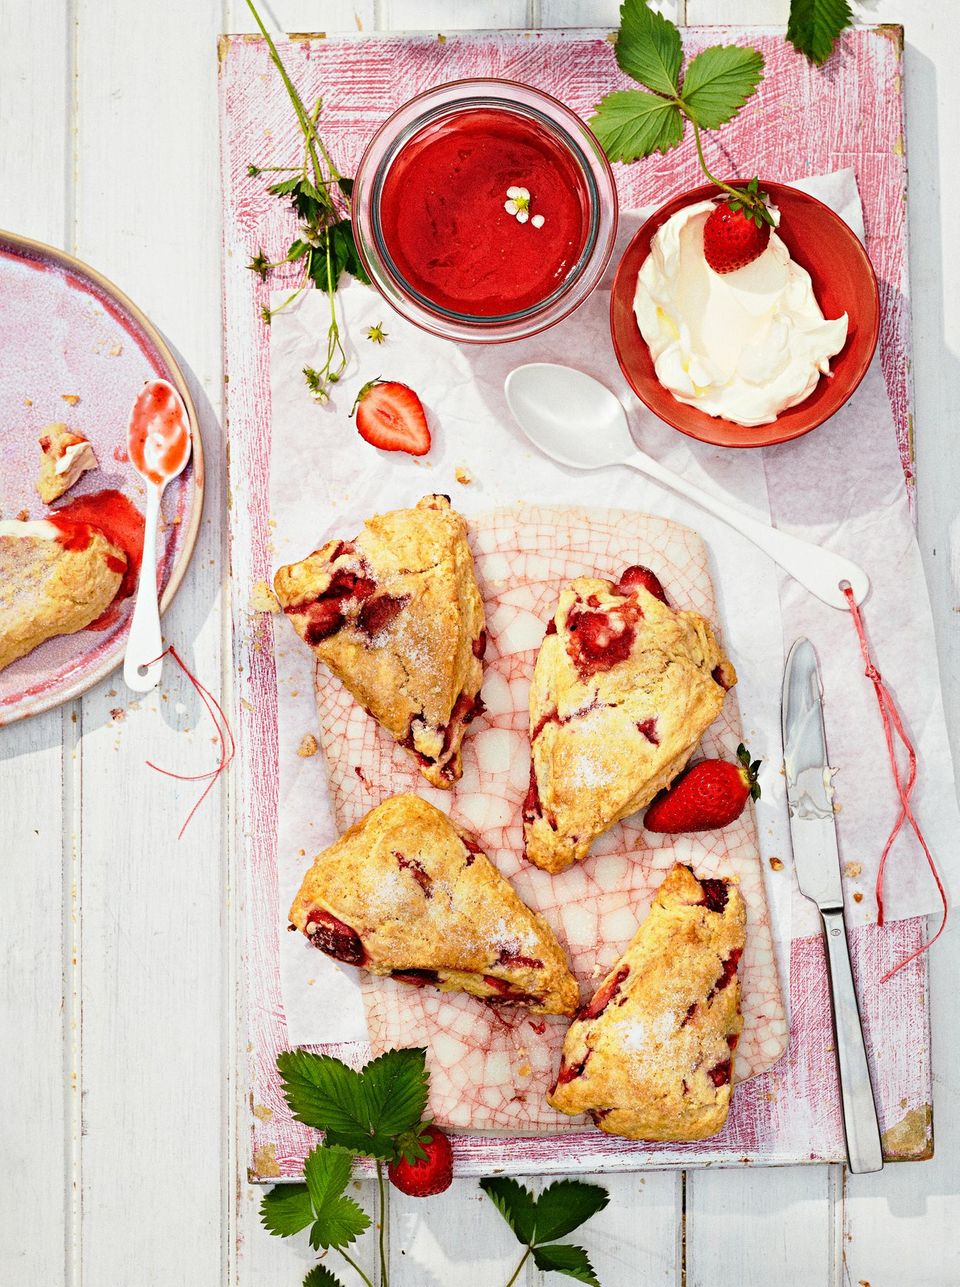 Unsere Variante des britischen Teatime-Klassikers „Scones with Clotted Cream and Strawberry Jam”: Statt lange eingekochter Konfitüre bereiten wir einen Blitzaufstrich zu, und der mürbe Teig wird durch frische Erdbeeren herrlich saftig. Creme double dazu – wunderbar!